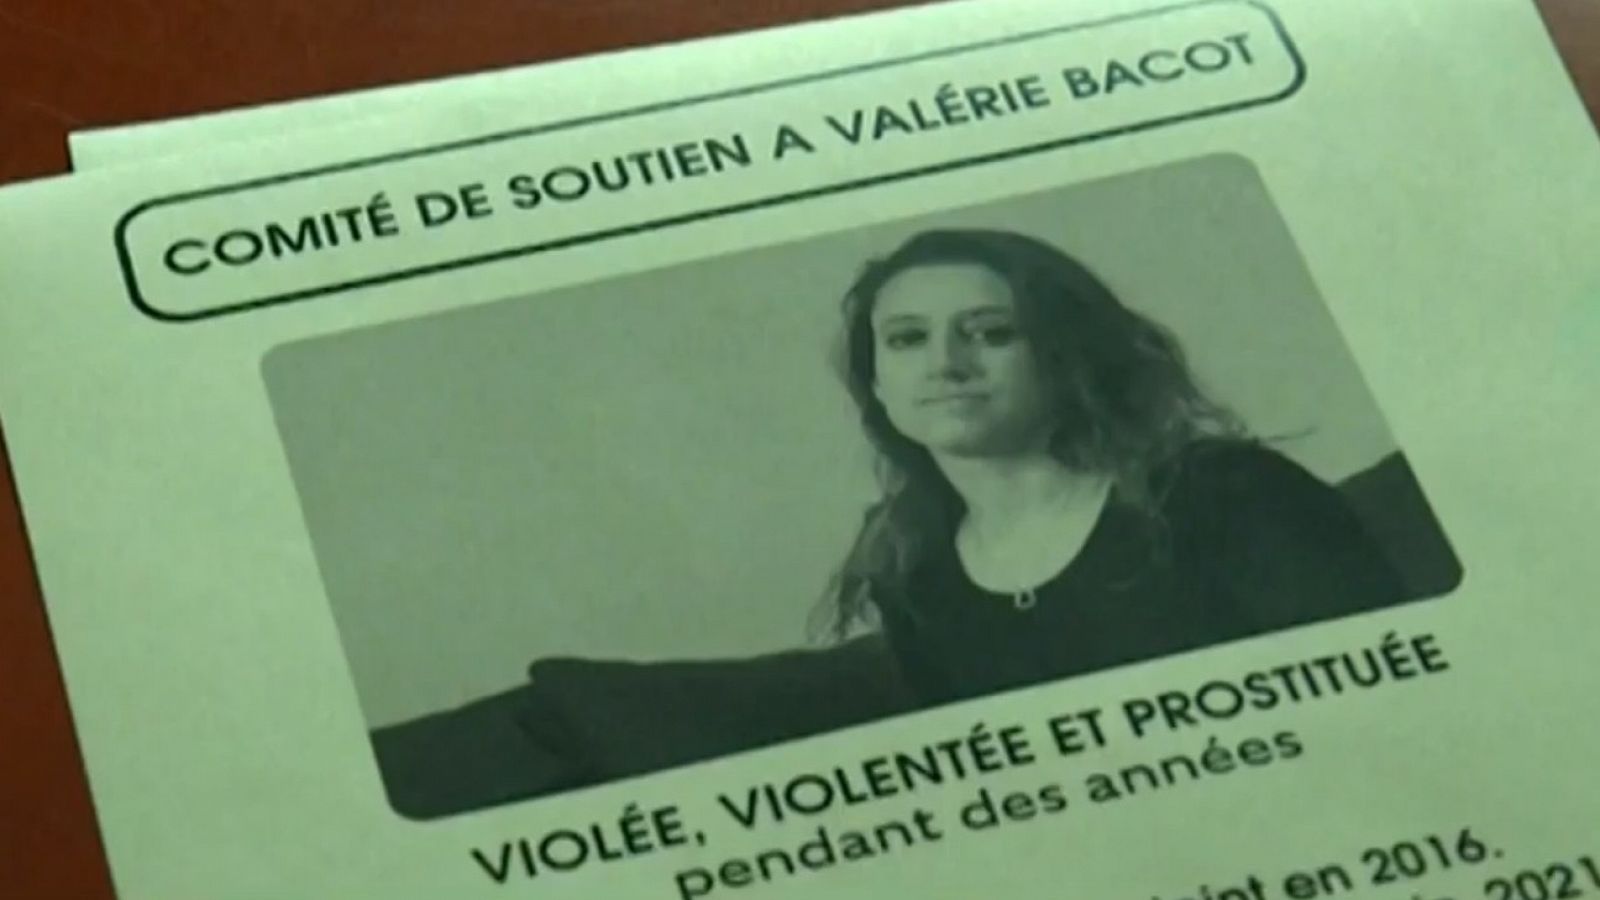 Juicio a una mujer en Francia por matar a su padrastro tras sufrir maltrato durante años